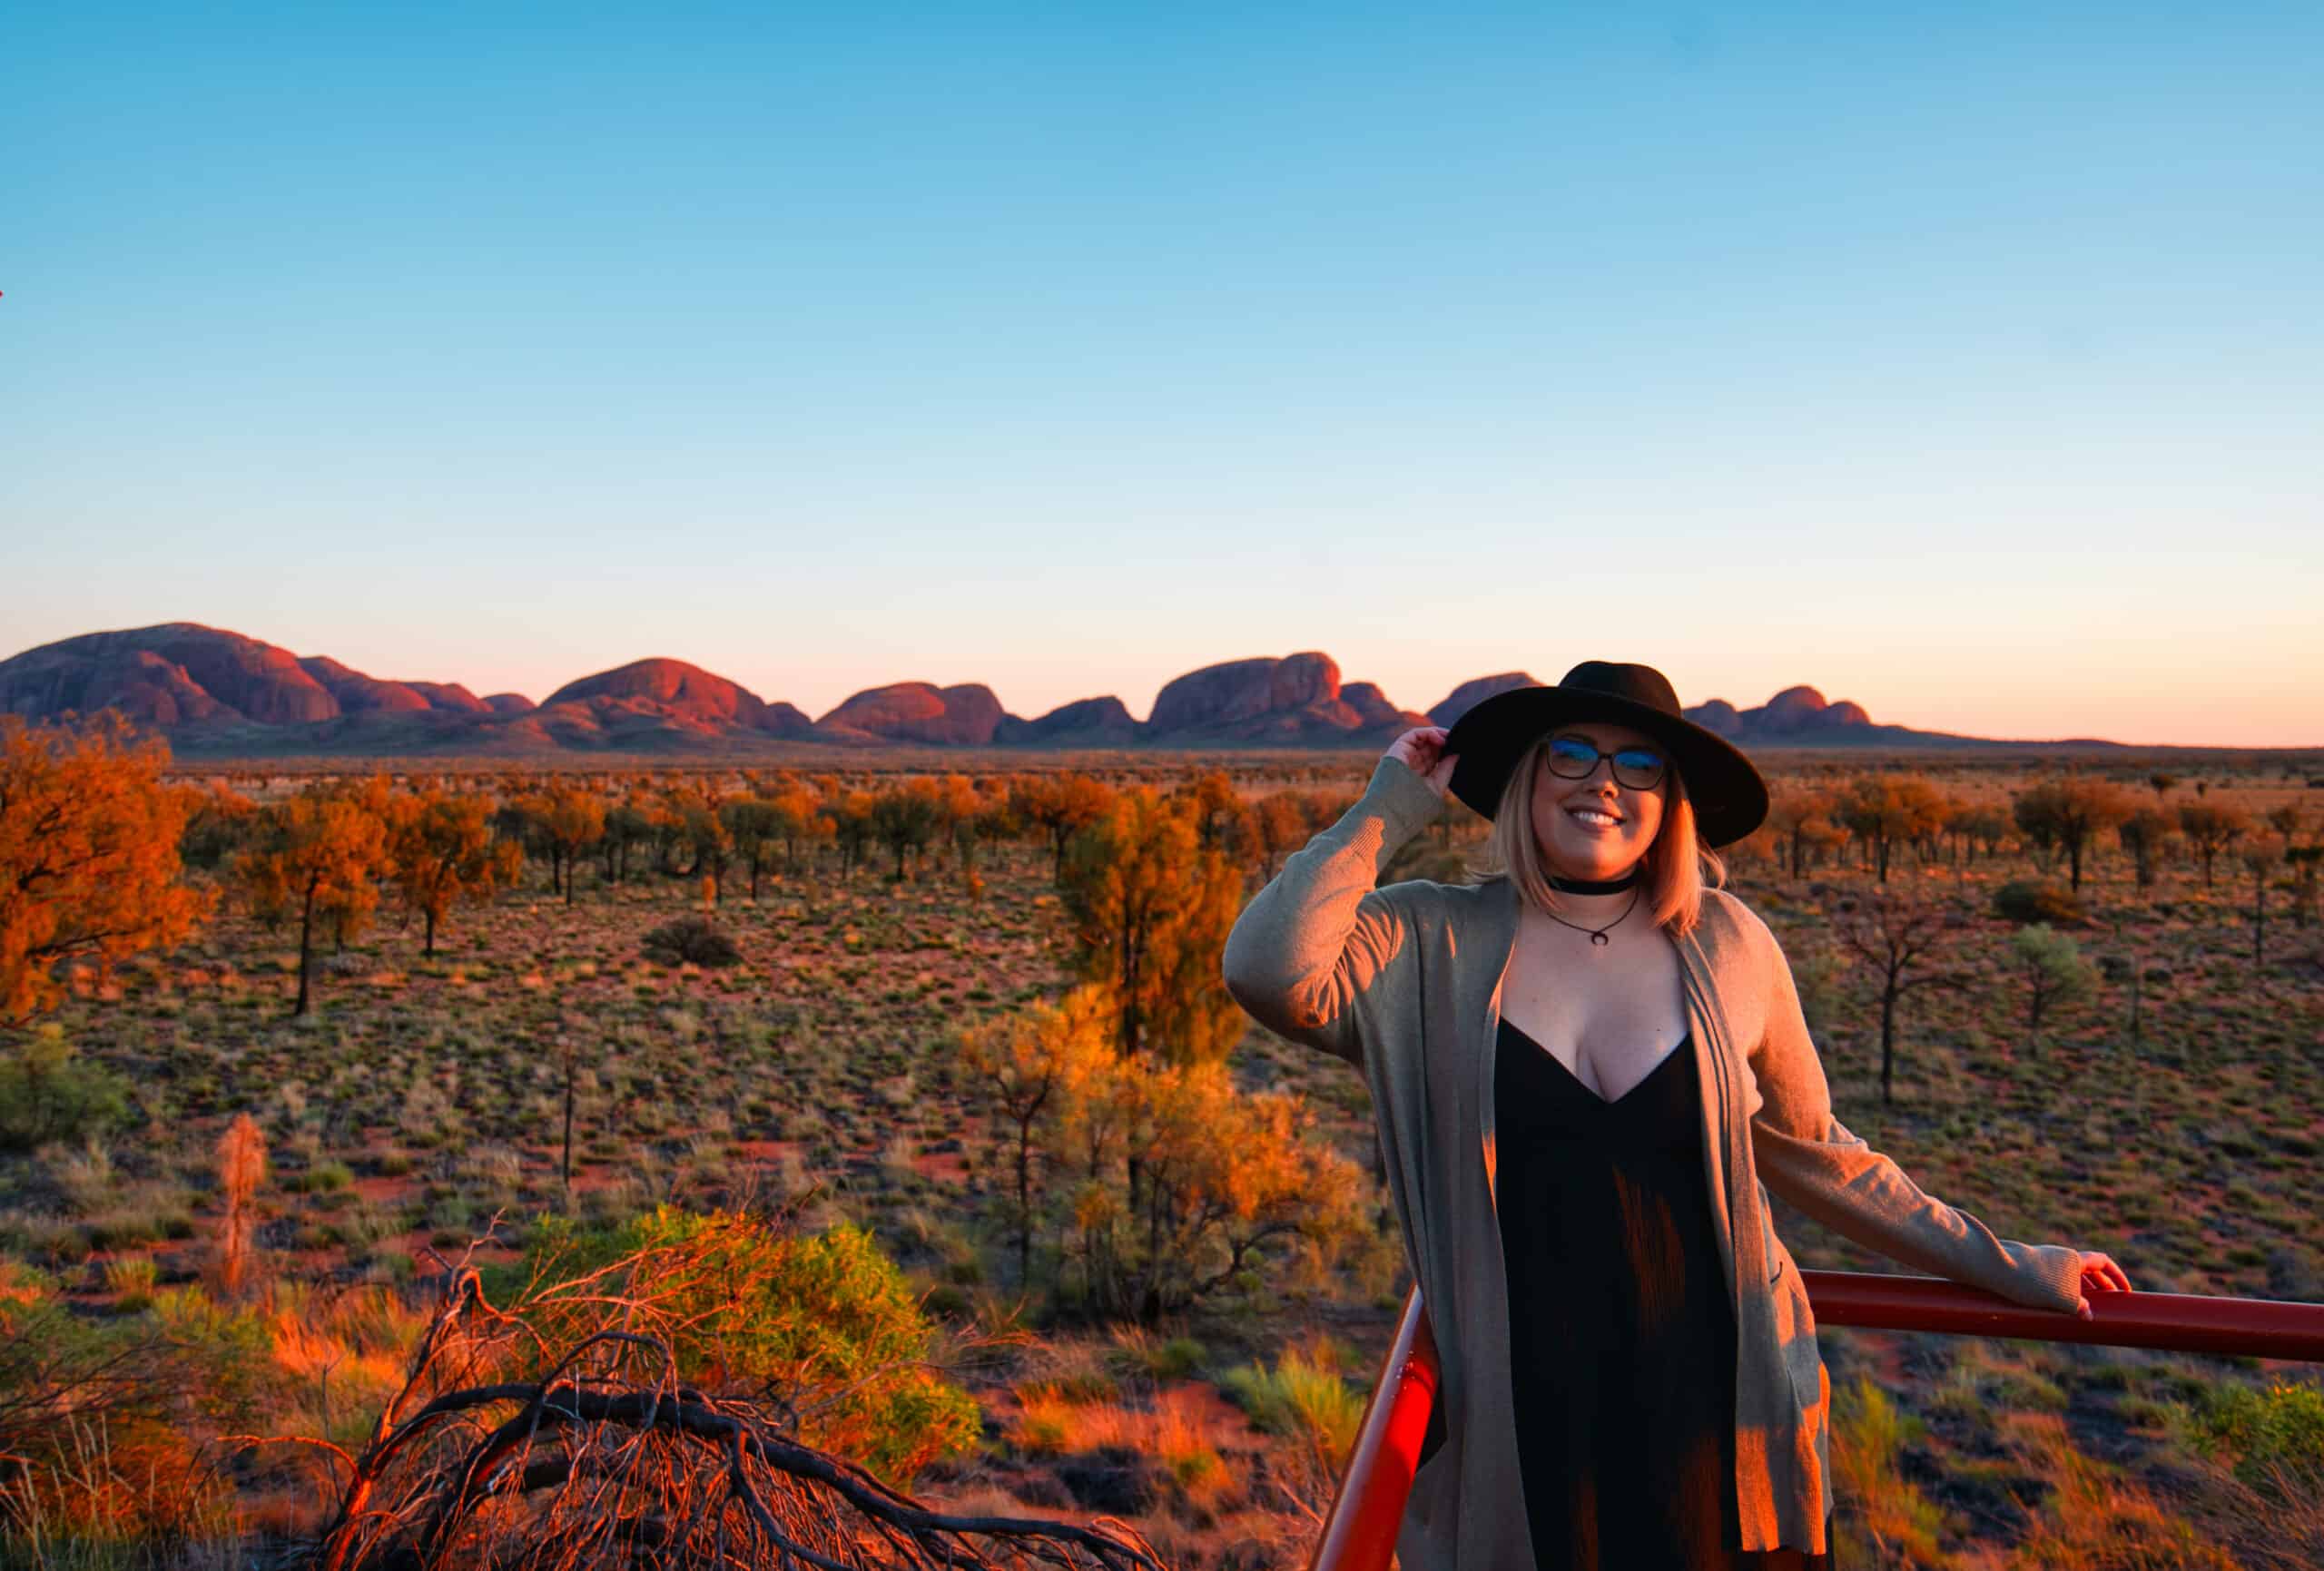 Visit Uluru